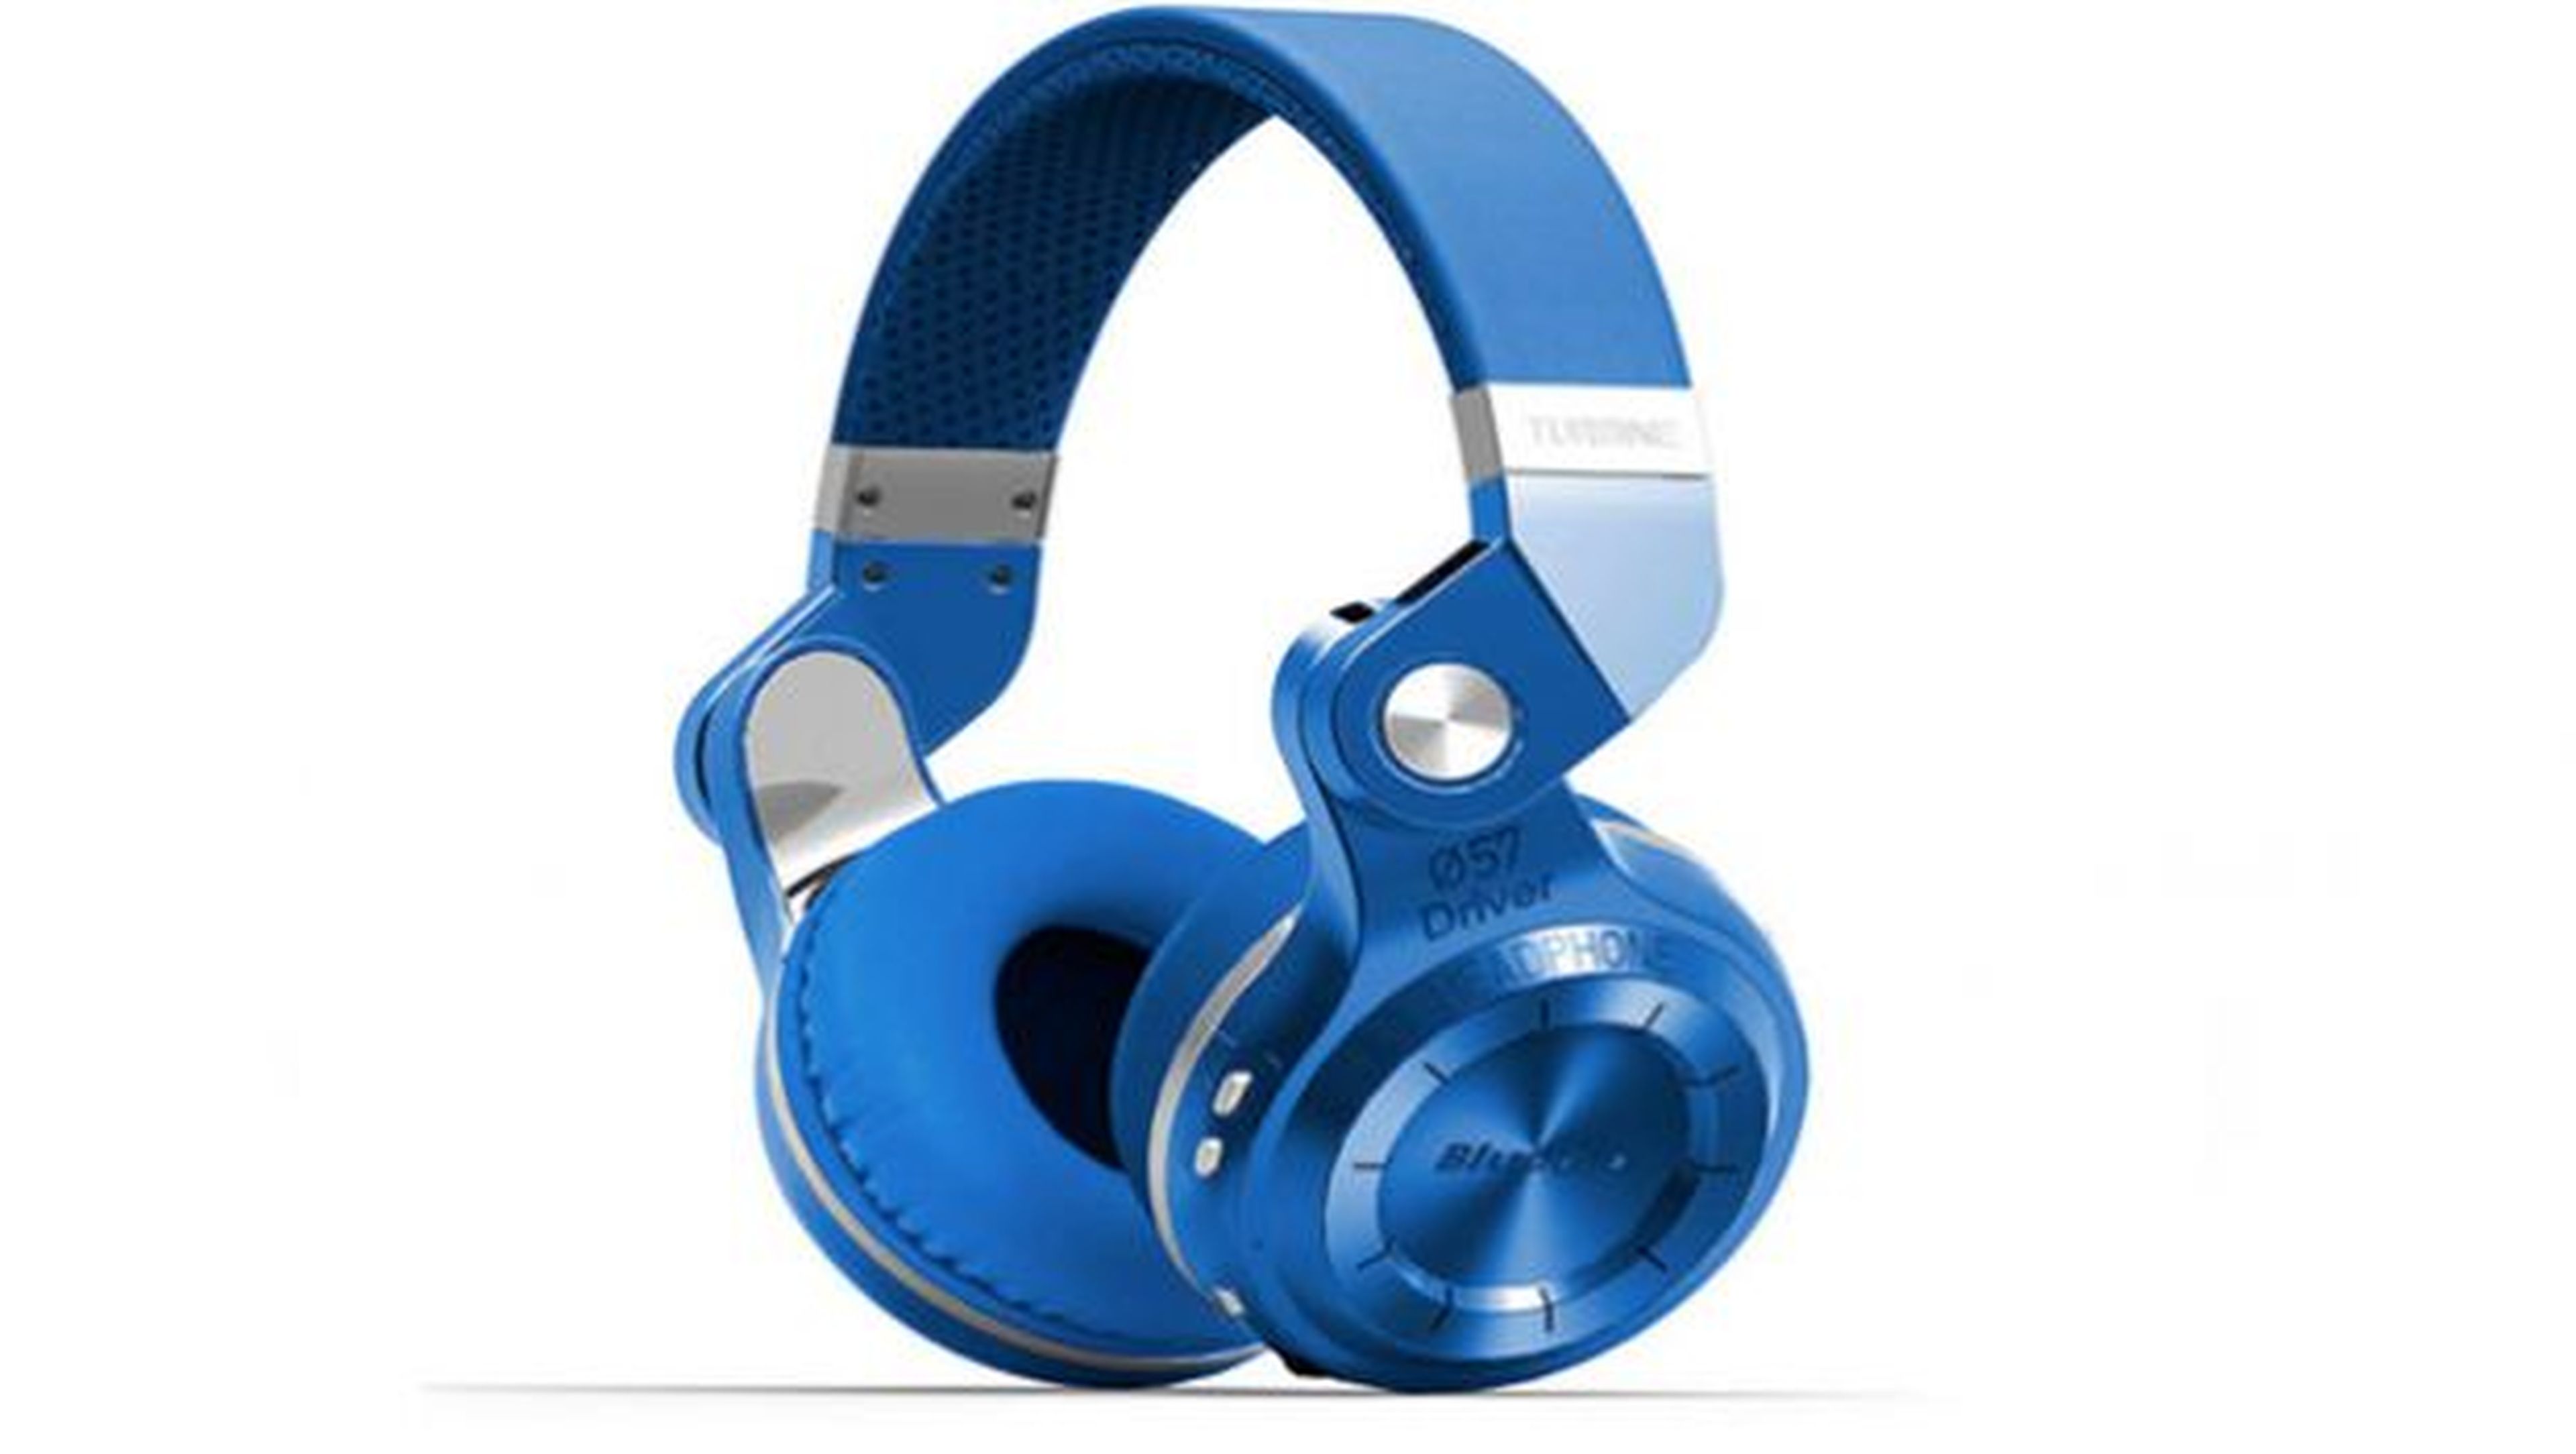 lo ha vuelto a hacer: acaba de tirar el precio de los Soundcore Life  Q30, uno de sus mejores auriculares Bluetooth